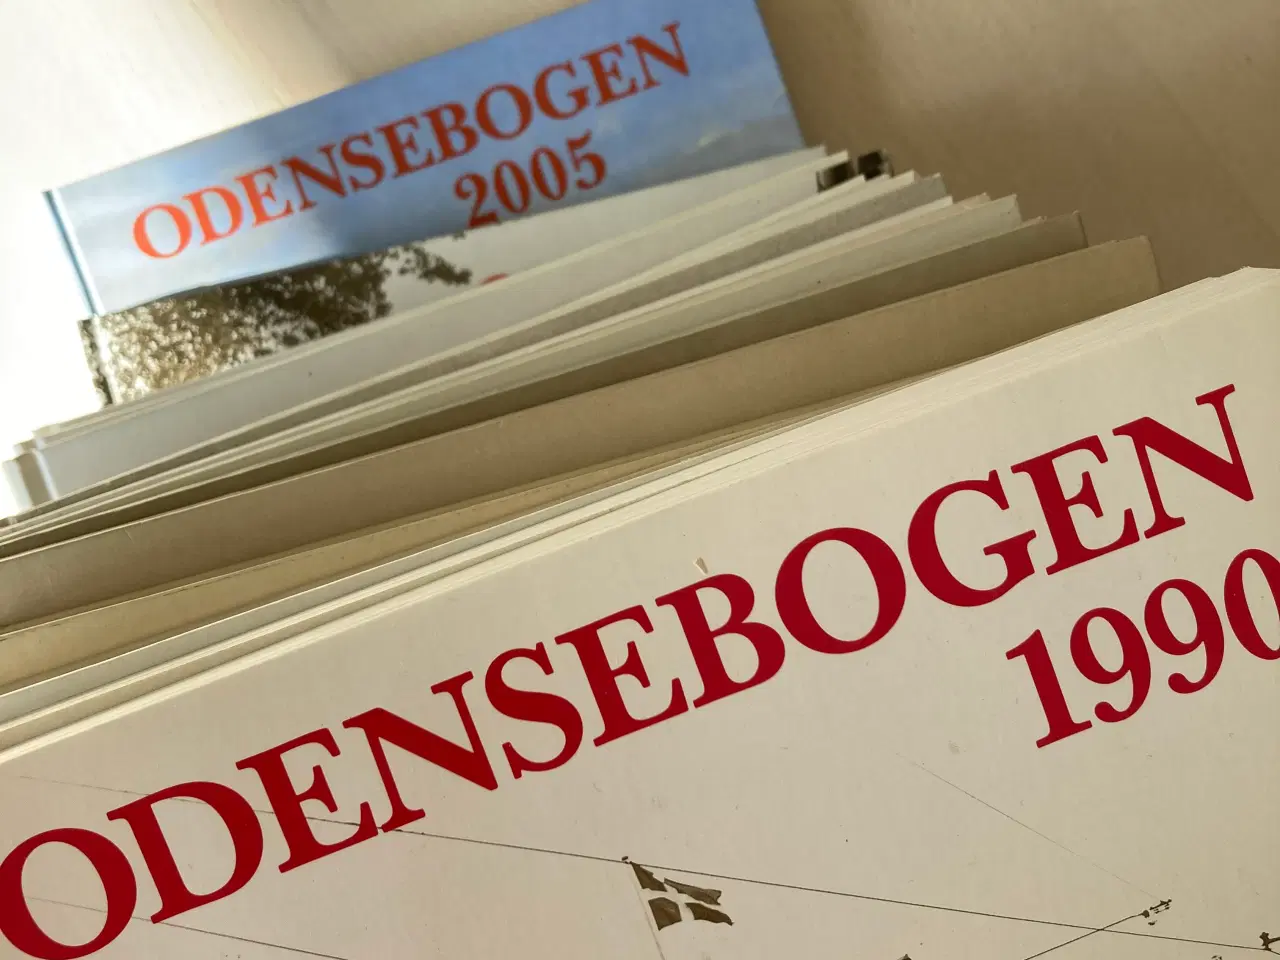 Billede 1 - 16 bind af Odensebogen: 1990-2005